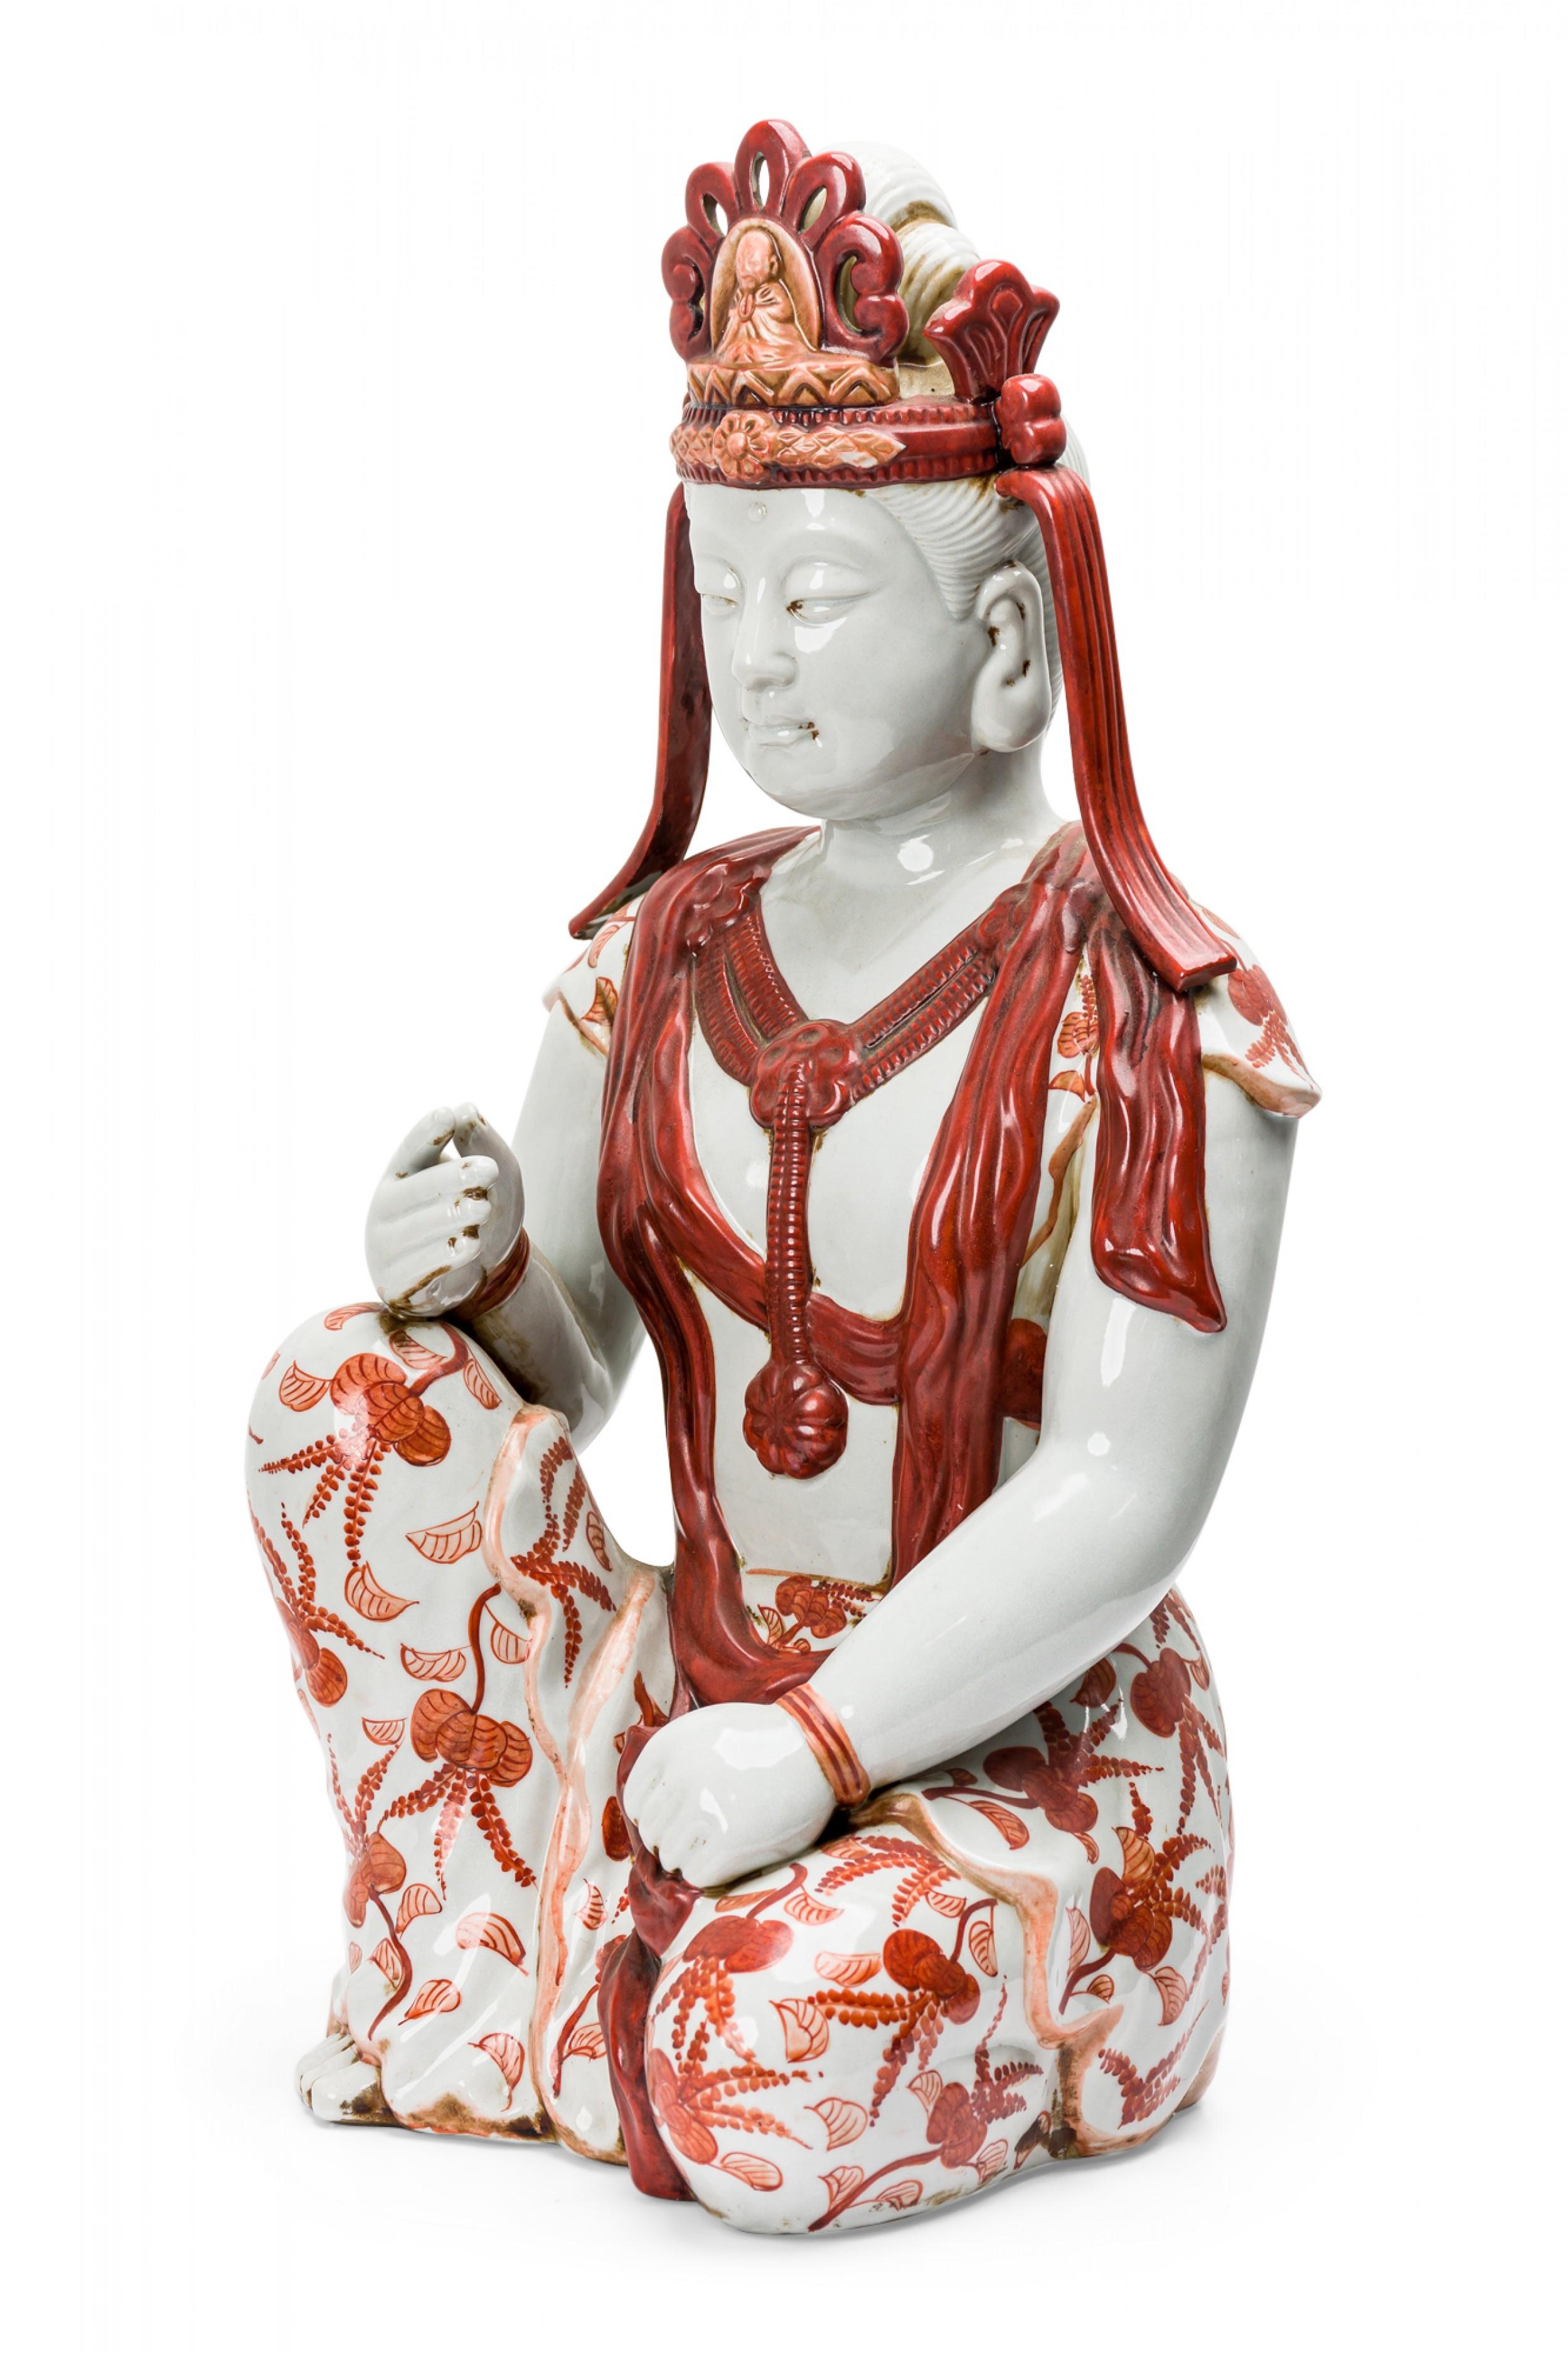 Vintage tibetische Porzellanstatue, die einen sitzenden Buddha darstellt, mit handgemalten orangefarbenen Details.